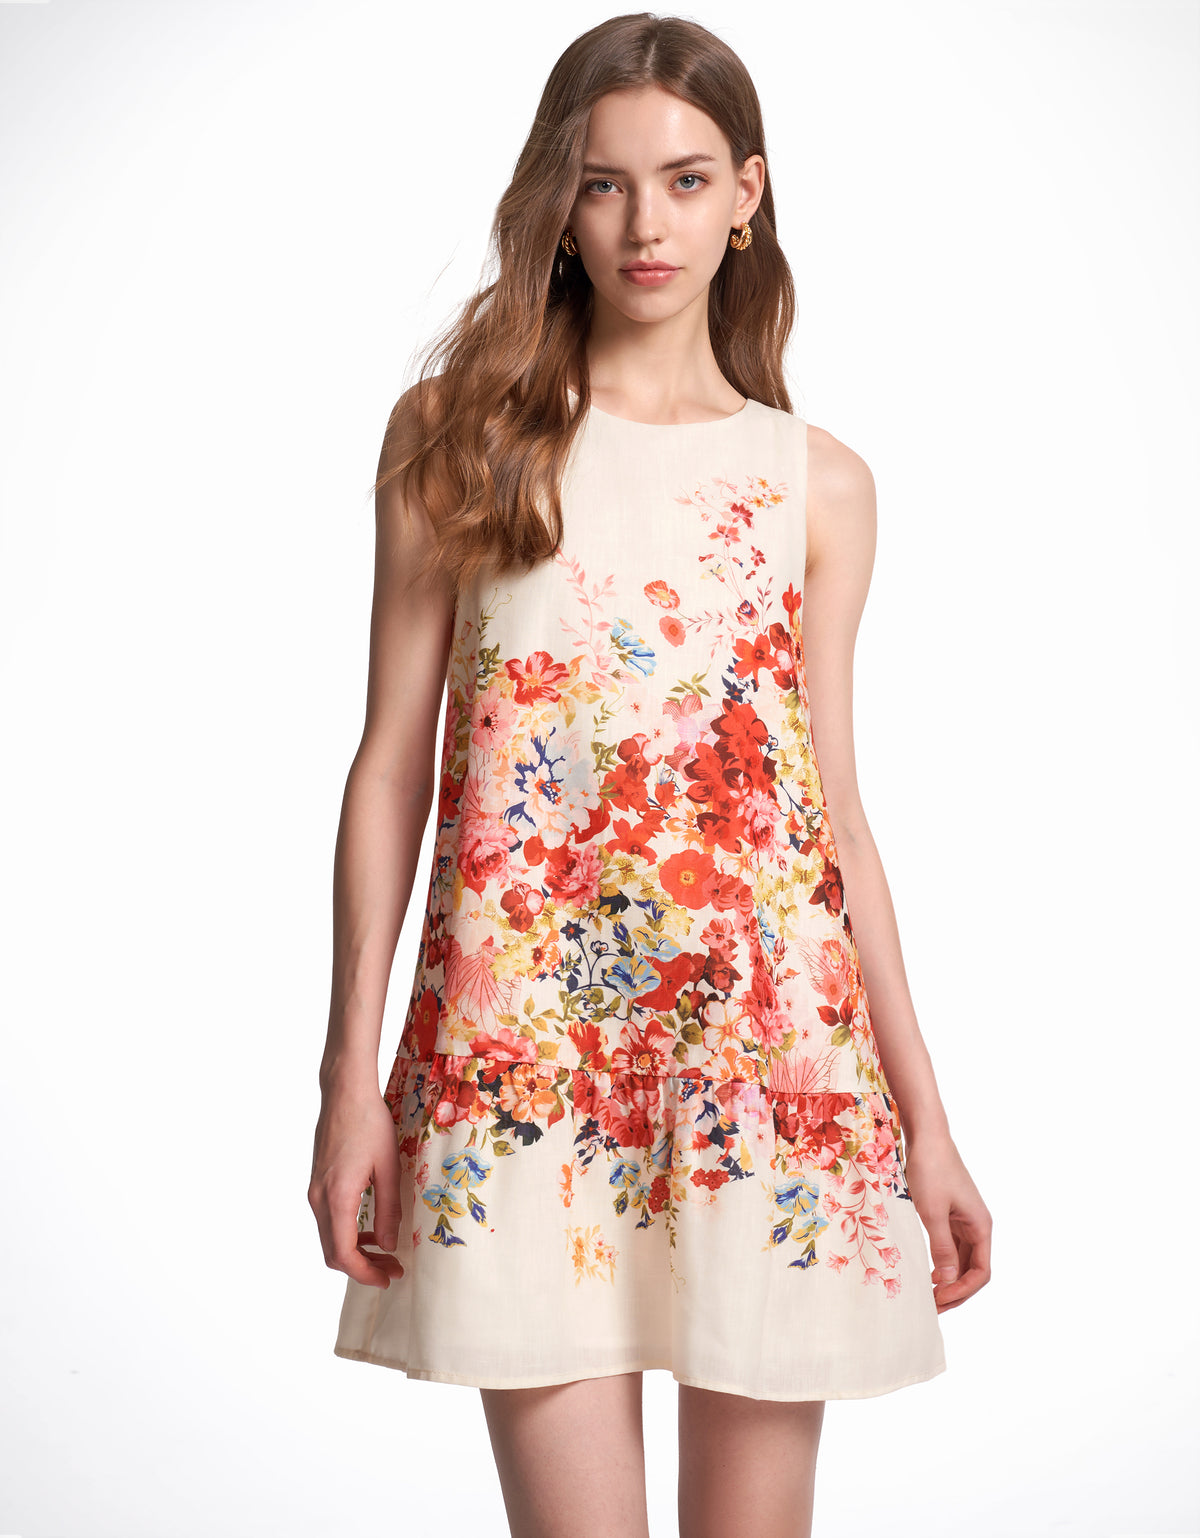 Cutout Back Floral Print Dress – Saturday Apparels Sdn. Bhd